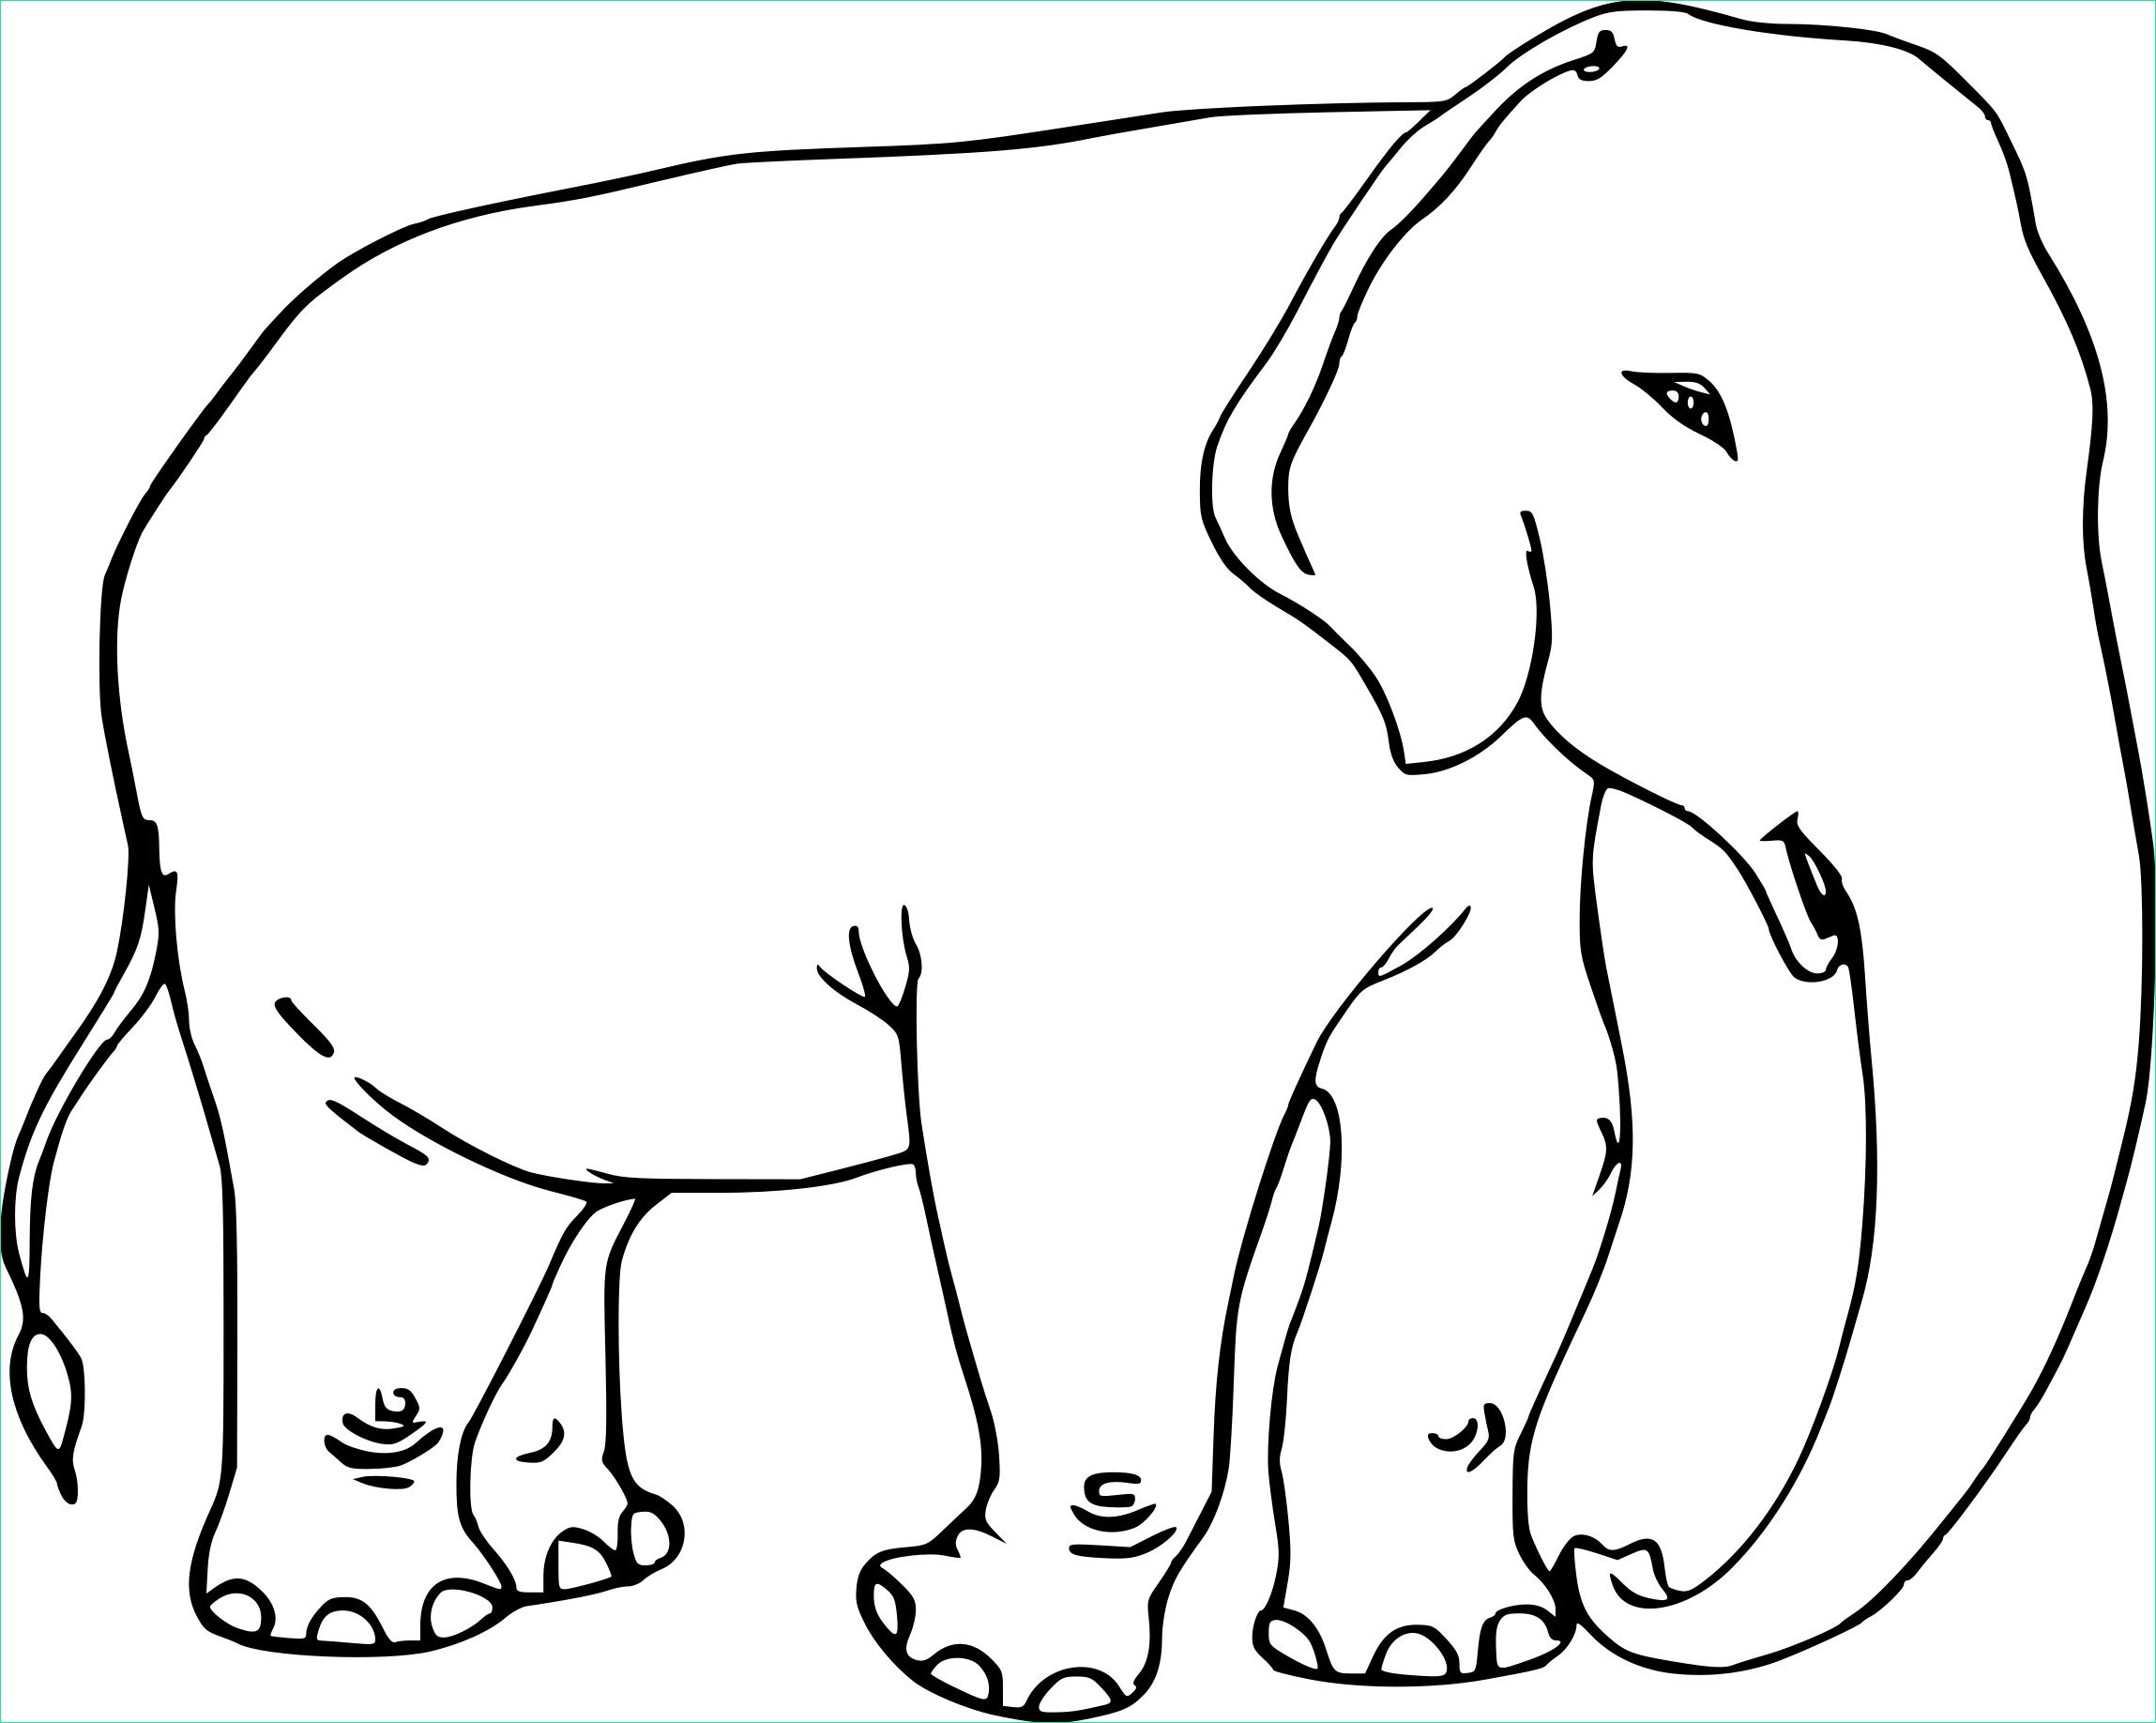 Coloriage Elephant Beau Collection Coloriage Elephant Adulte à Imprimer Sur Coloriages Fo